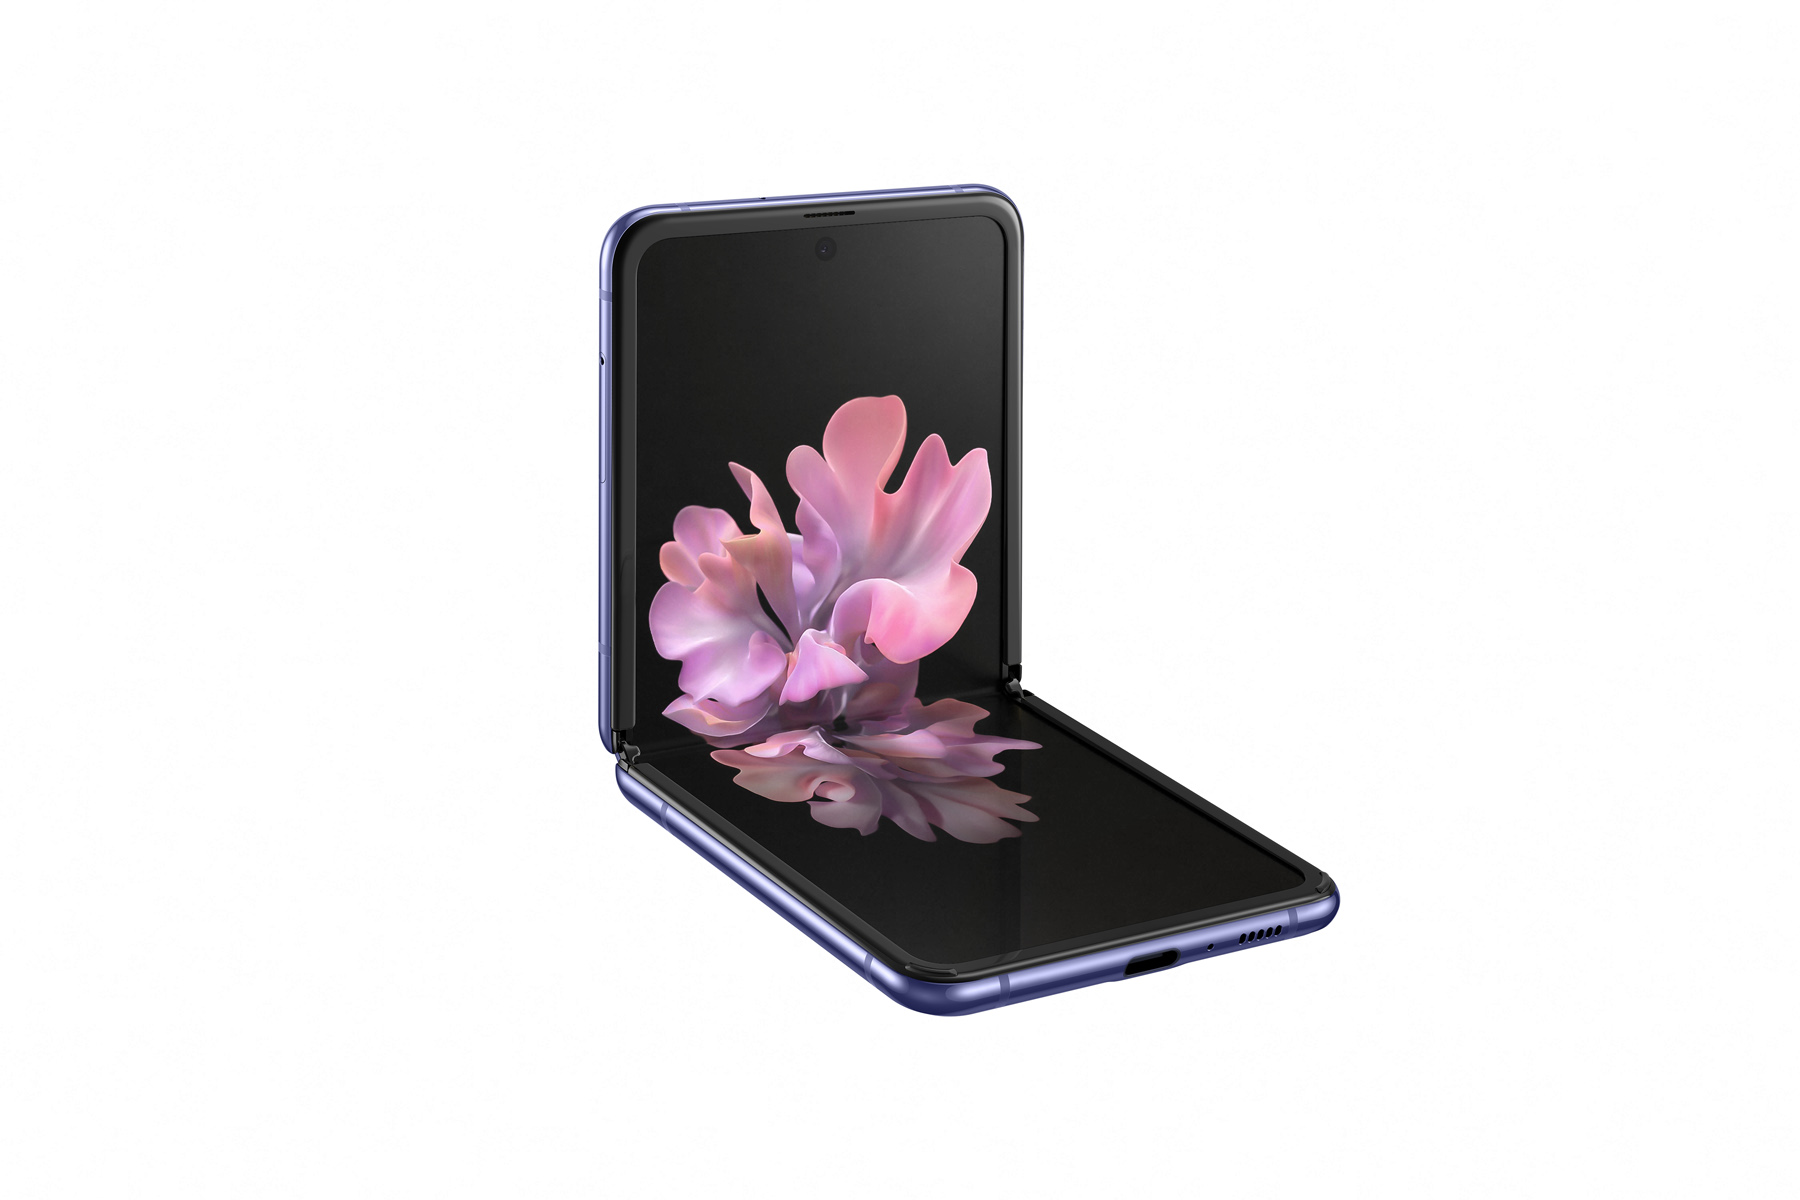 Galaxy Z Flip chính thức ra mắt với màn hình gập
theo chiều dọc, Snapdragon 855+, giá 32.1 trệu